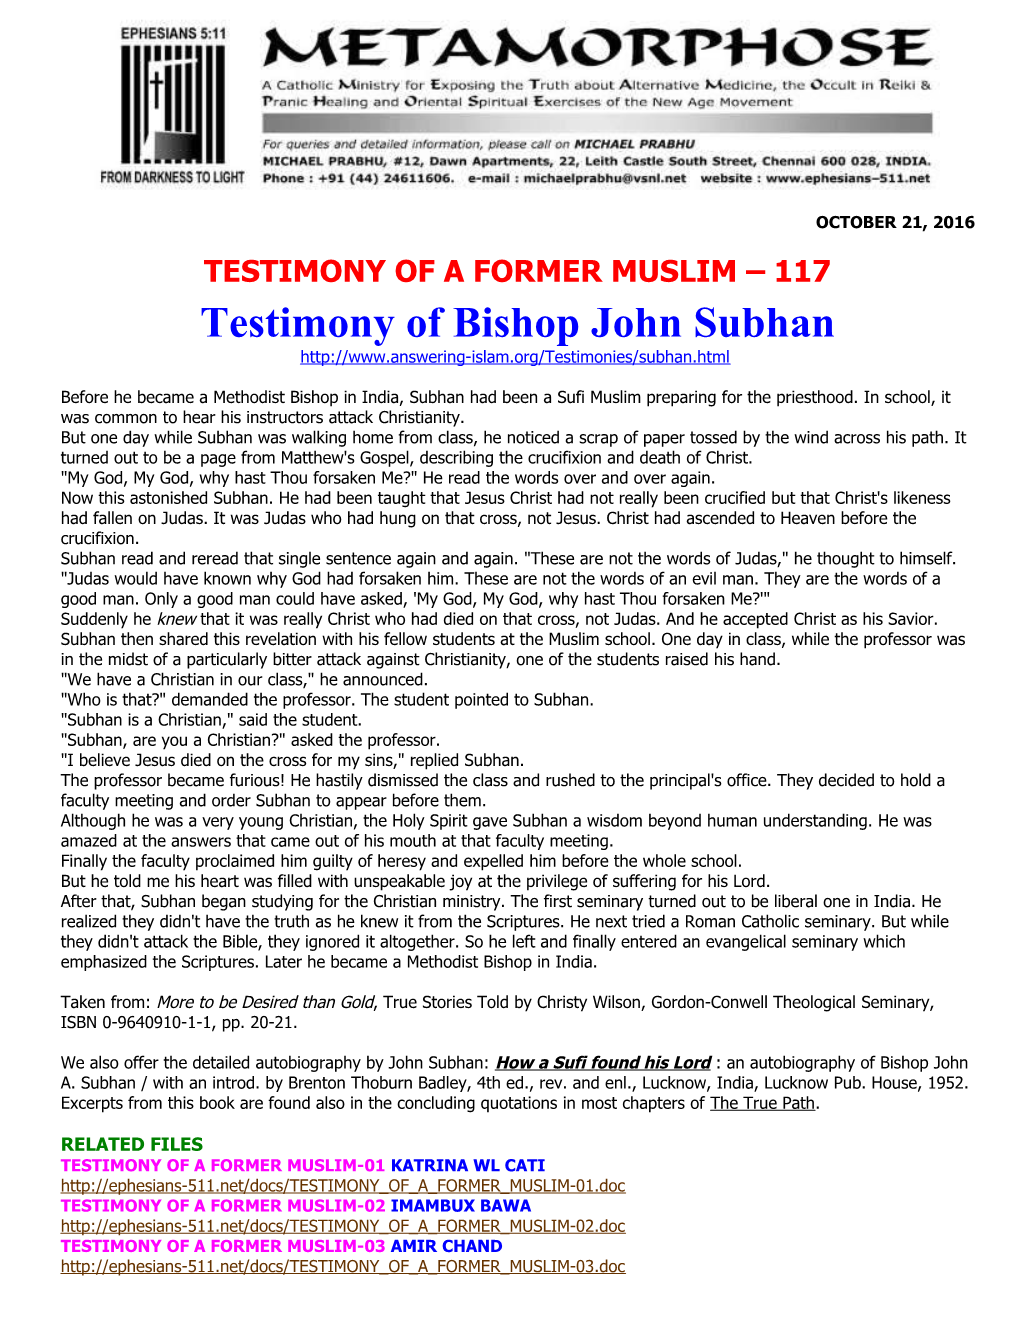 Testimony of Bishop John Subhan